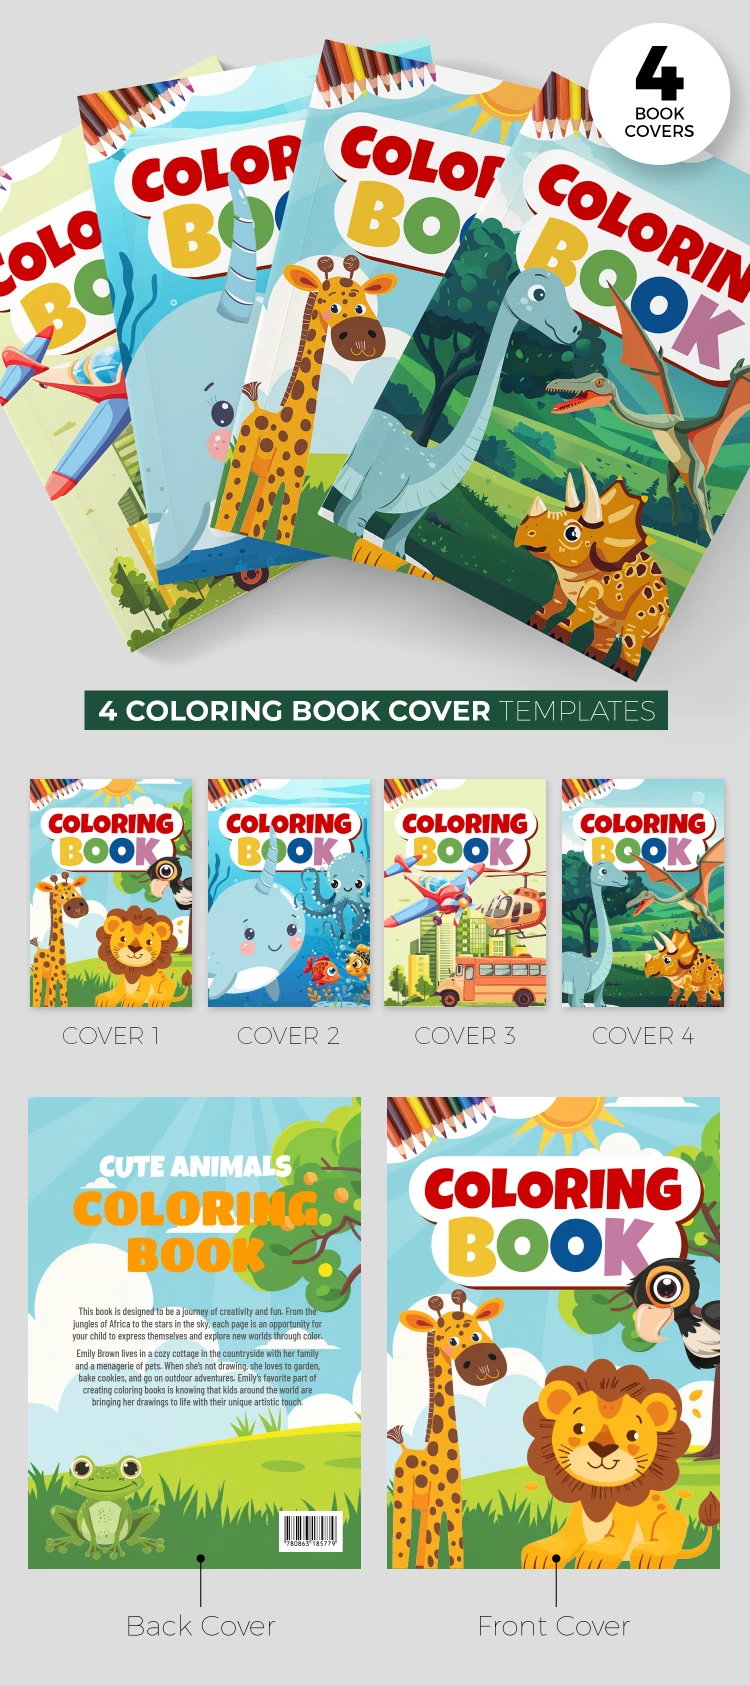 Capa do Livro para Colorir - free Google Docs Template - 10068824